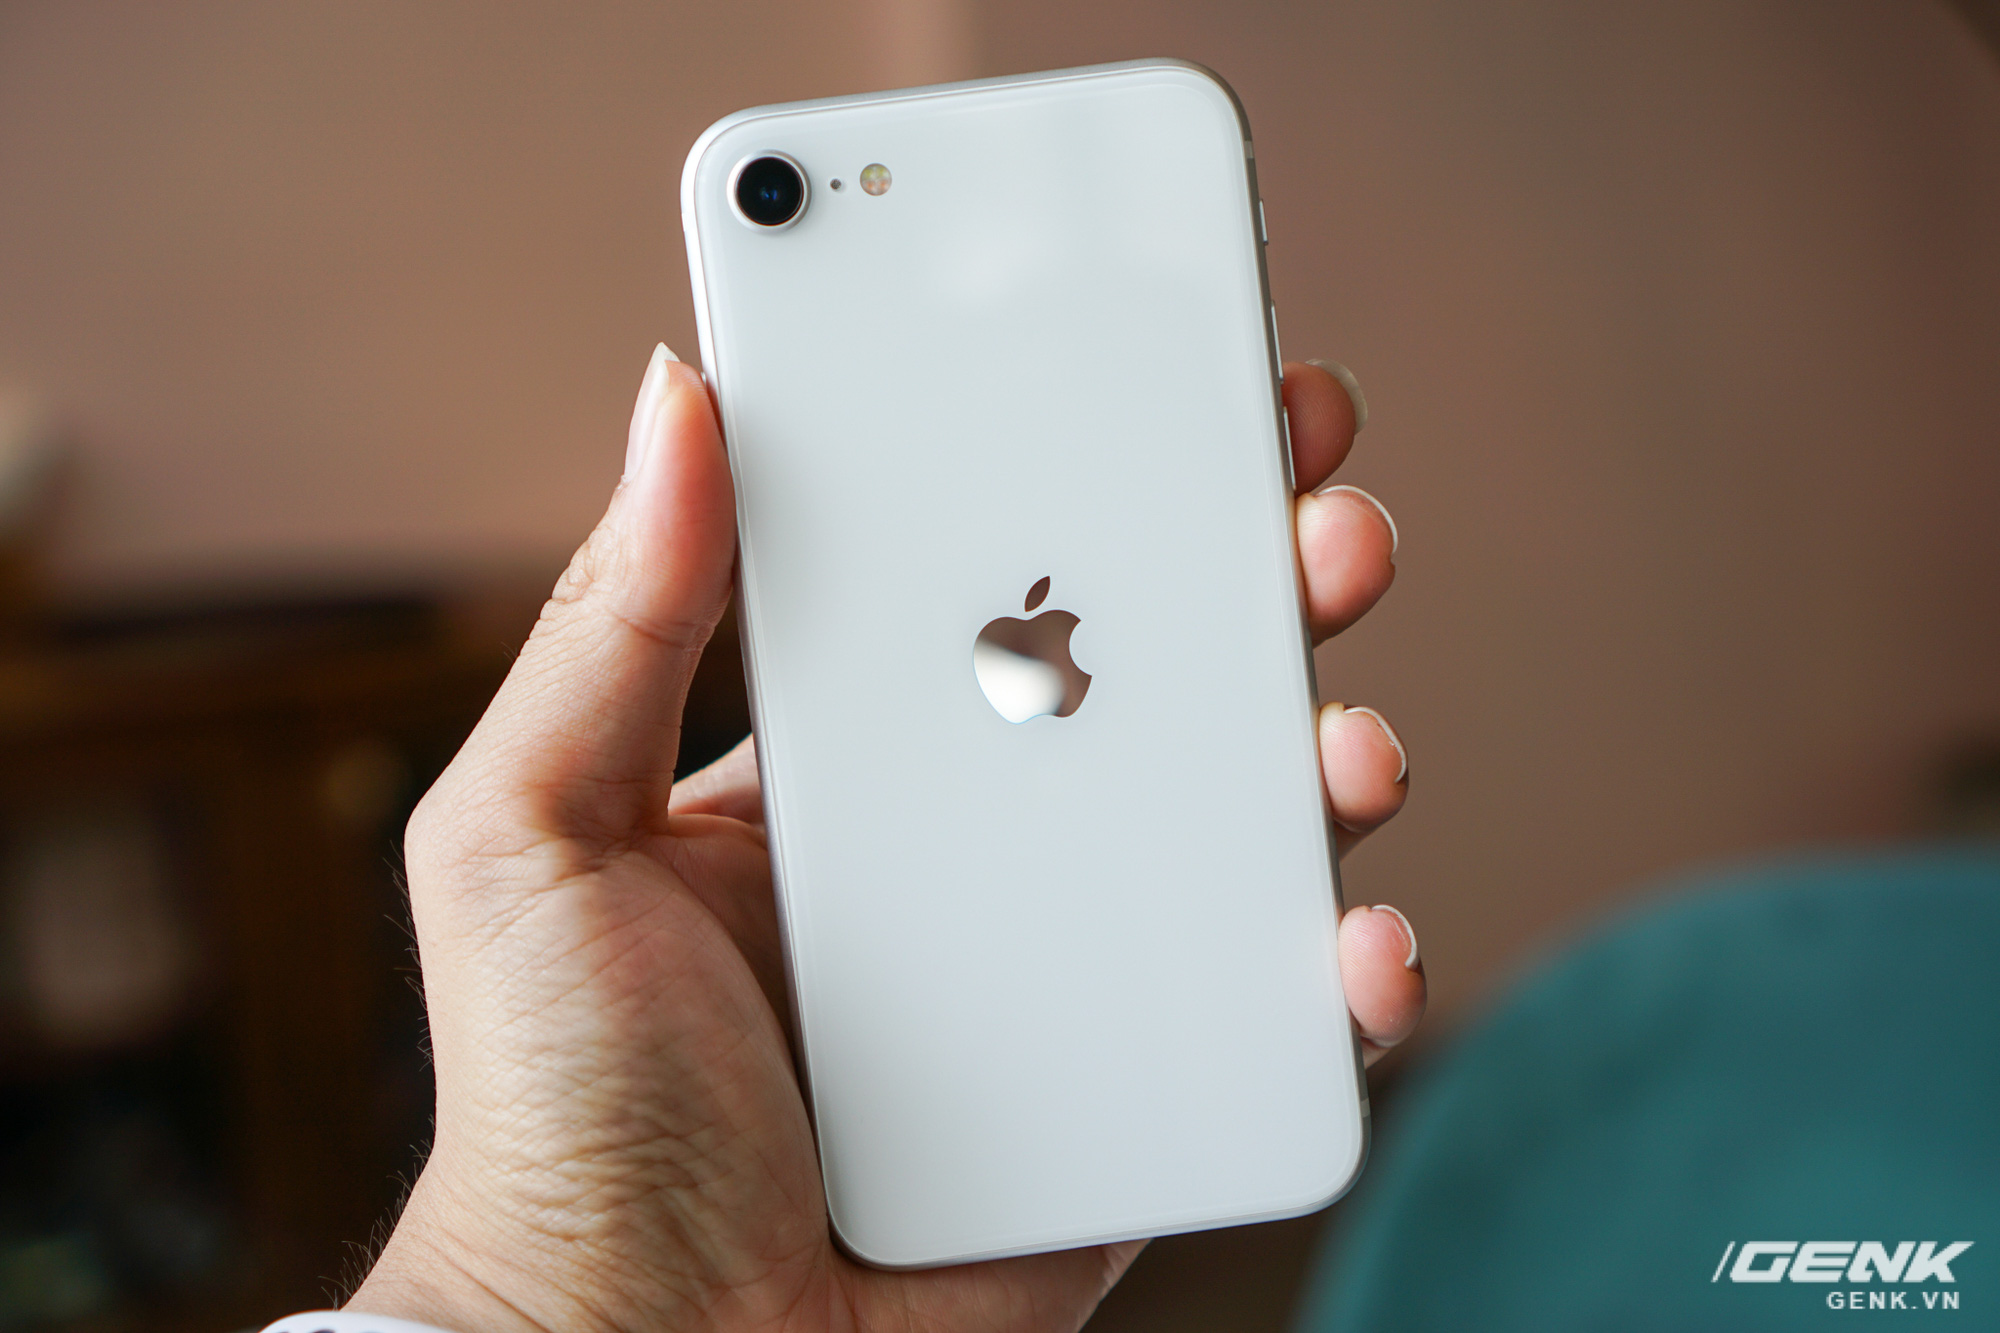 Đánh giá iPhone SE 2020 – Iphone giá rẻ của Apple - THIẾT BỊ KẾT NỐI